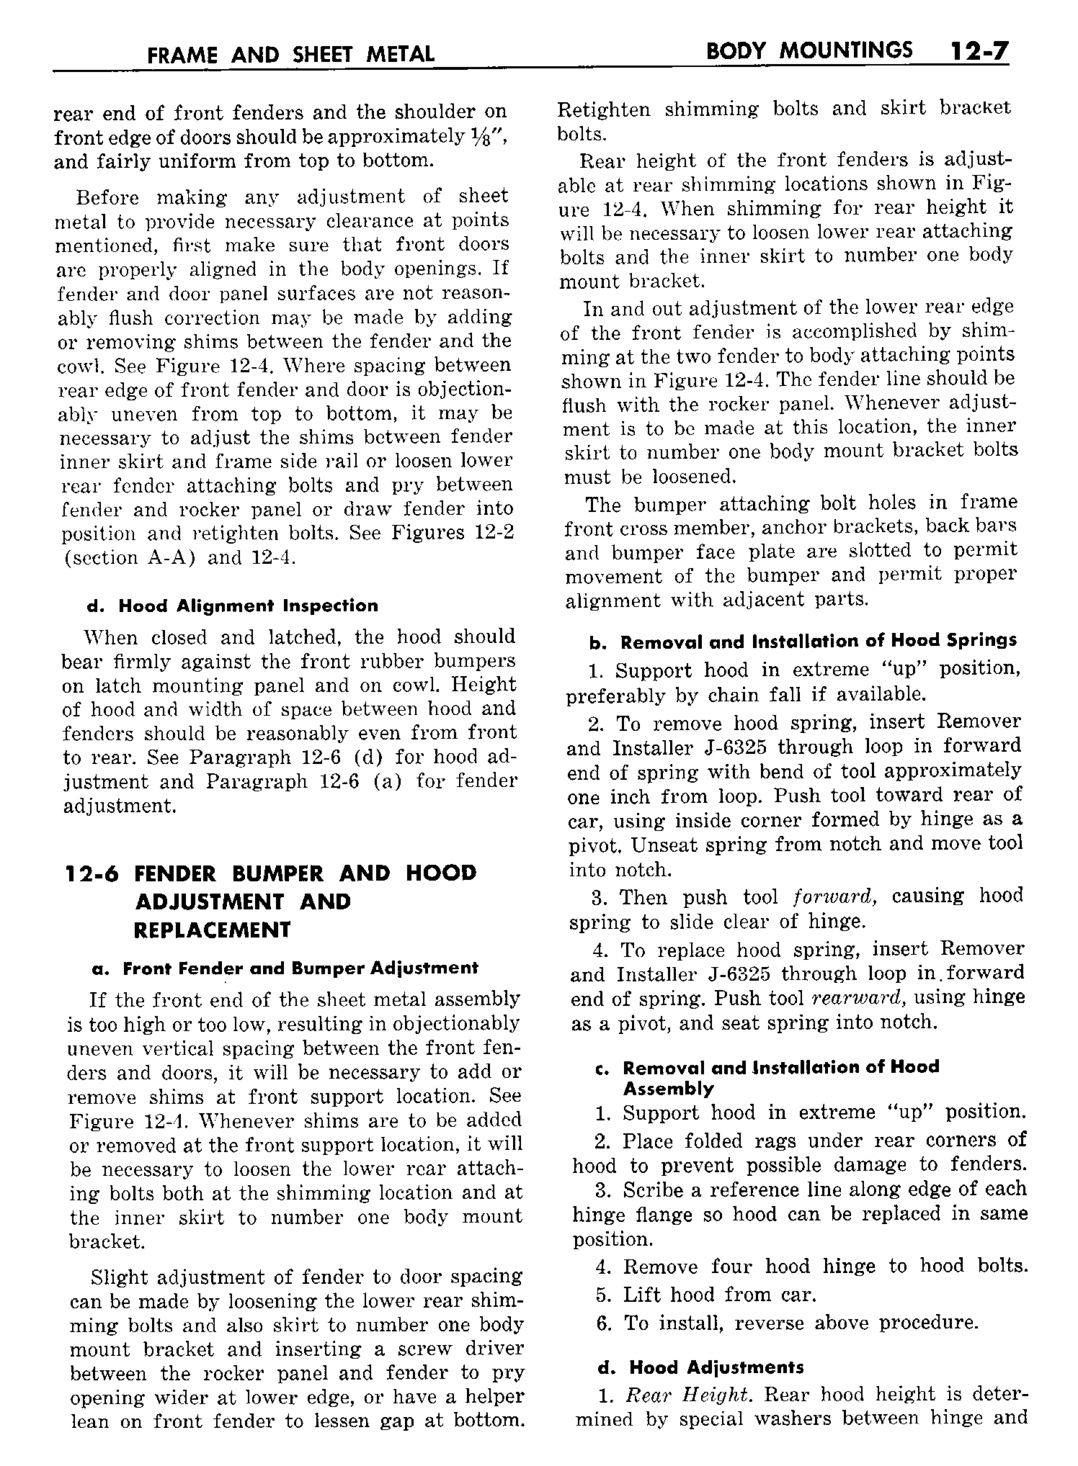 n_13 1960 Buick Shop Manual - Frame & Sheet Metal-007-007.jpg